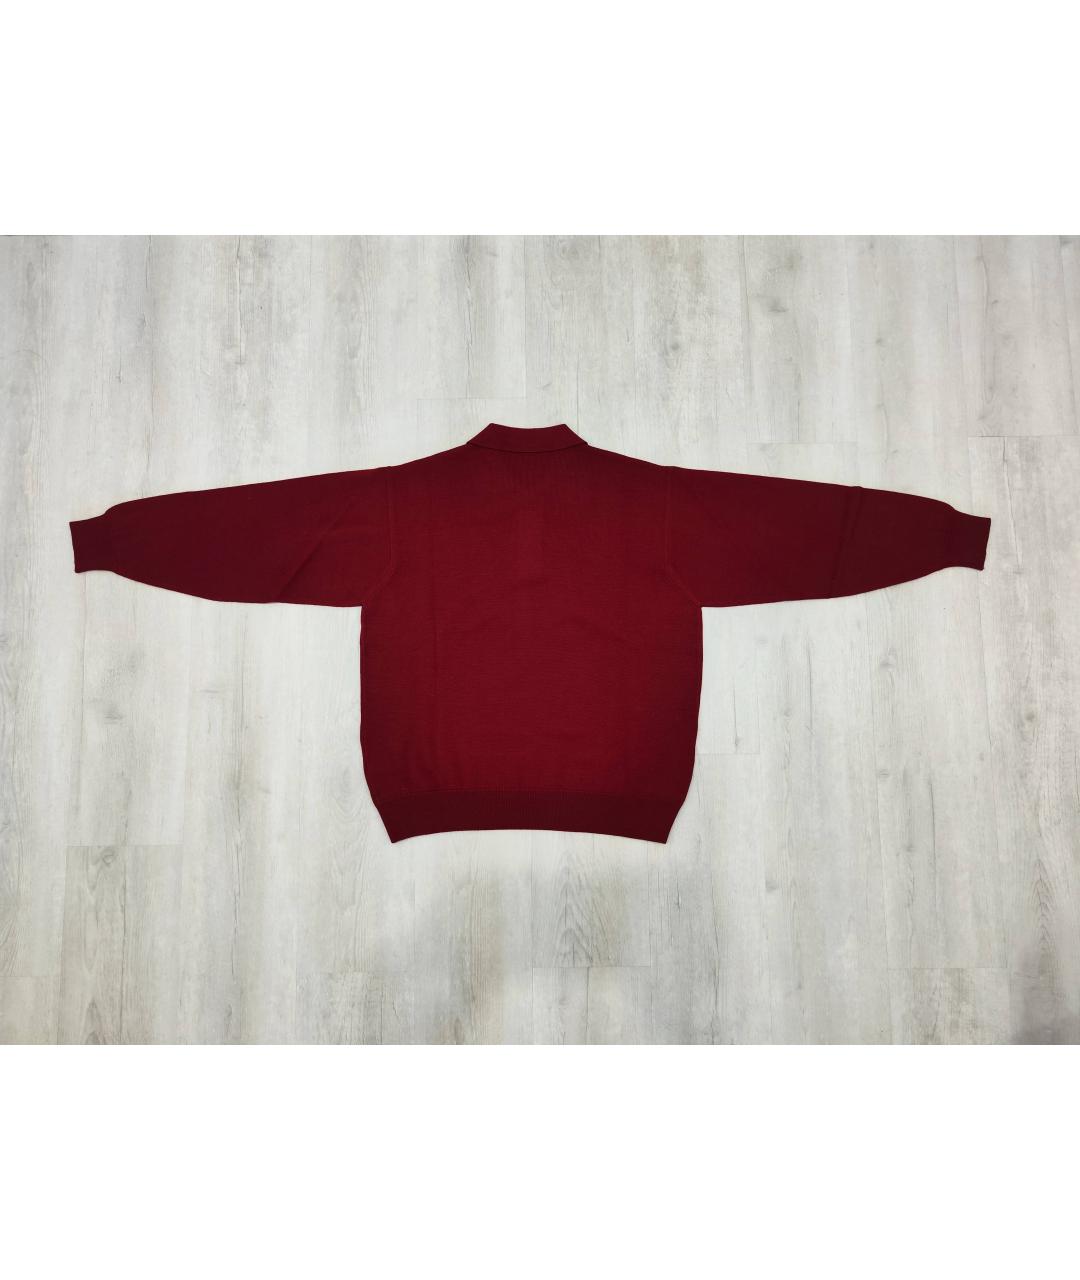 BURBERRY Бордовый шерстяной джемпер / свитер, фото 2